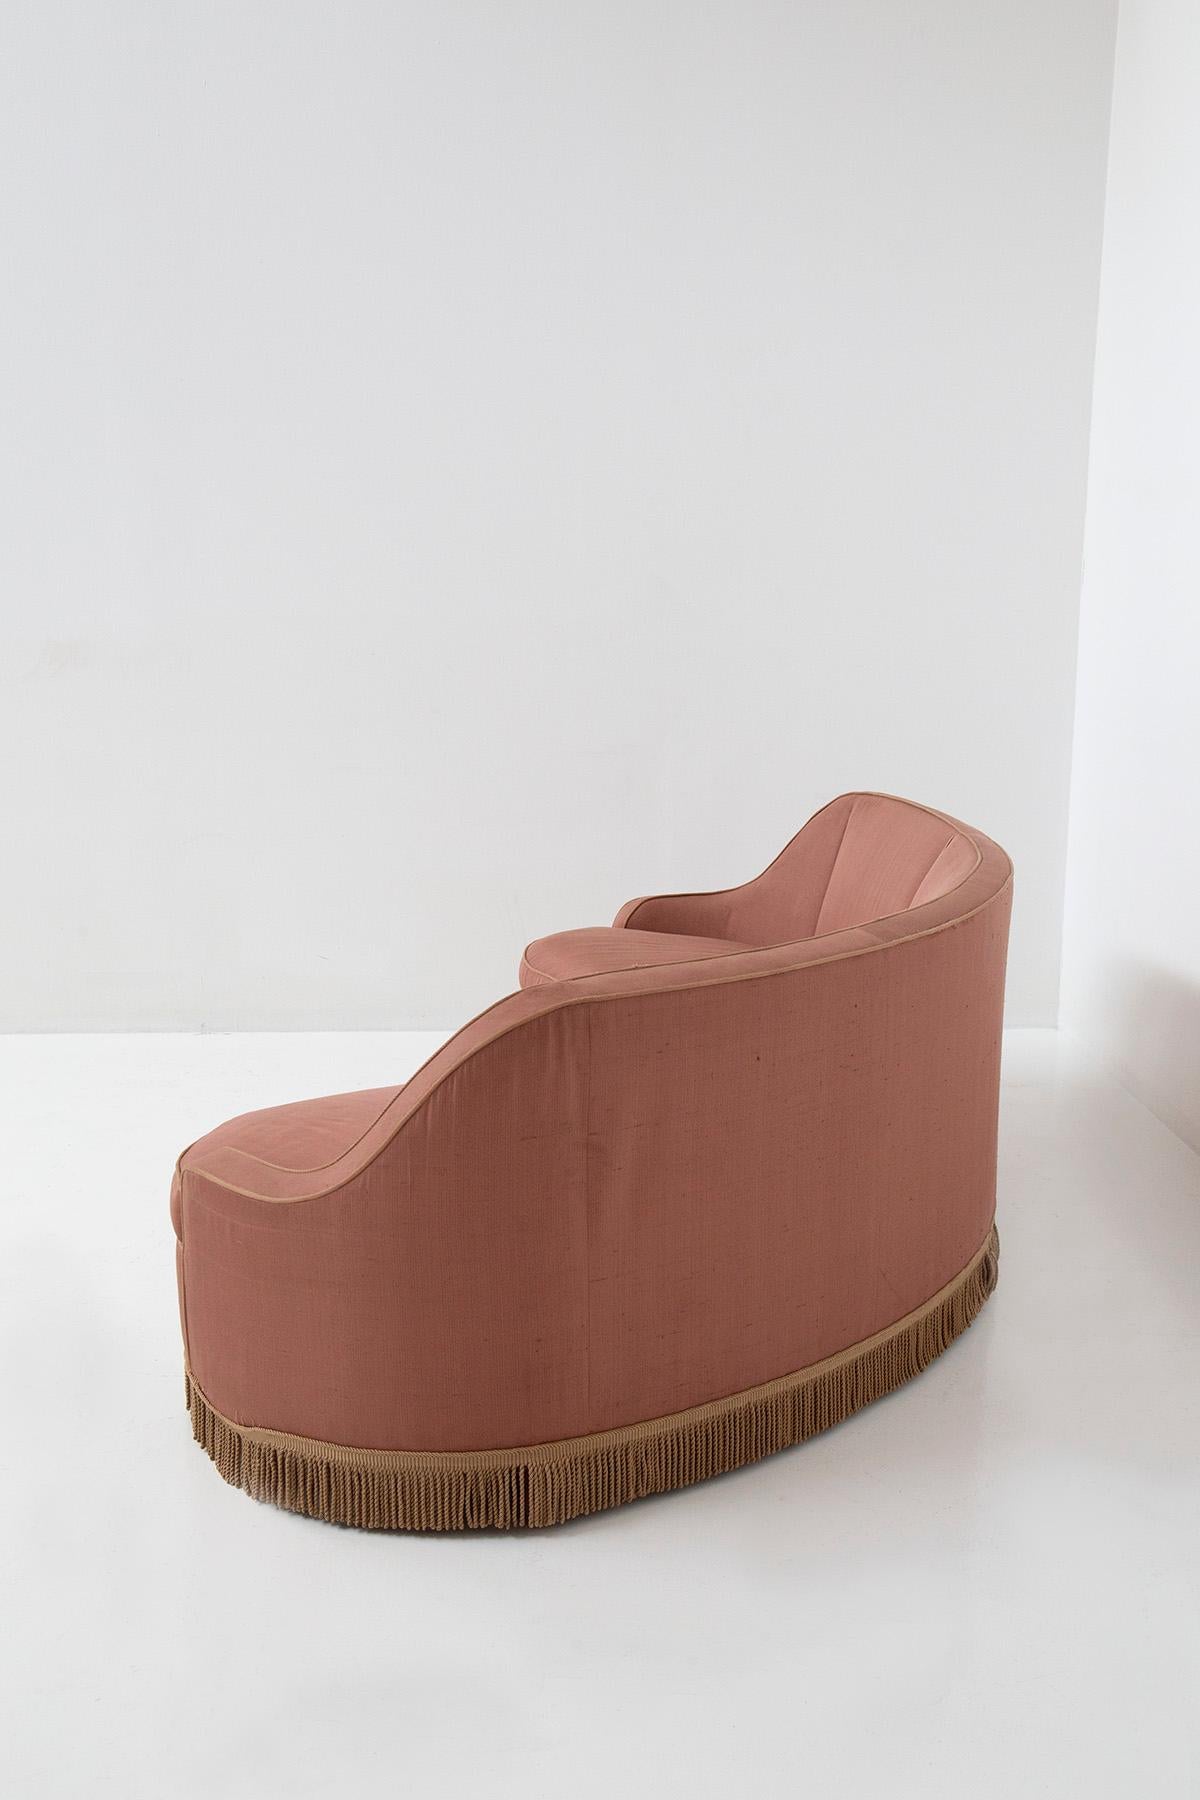 Italian three-seater sofa in pink fabric attributed to Gio Ponti 5